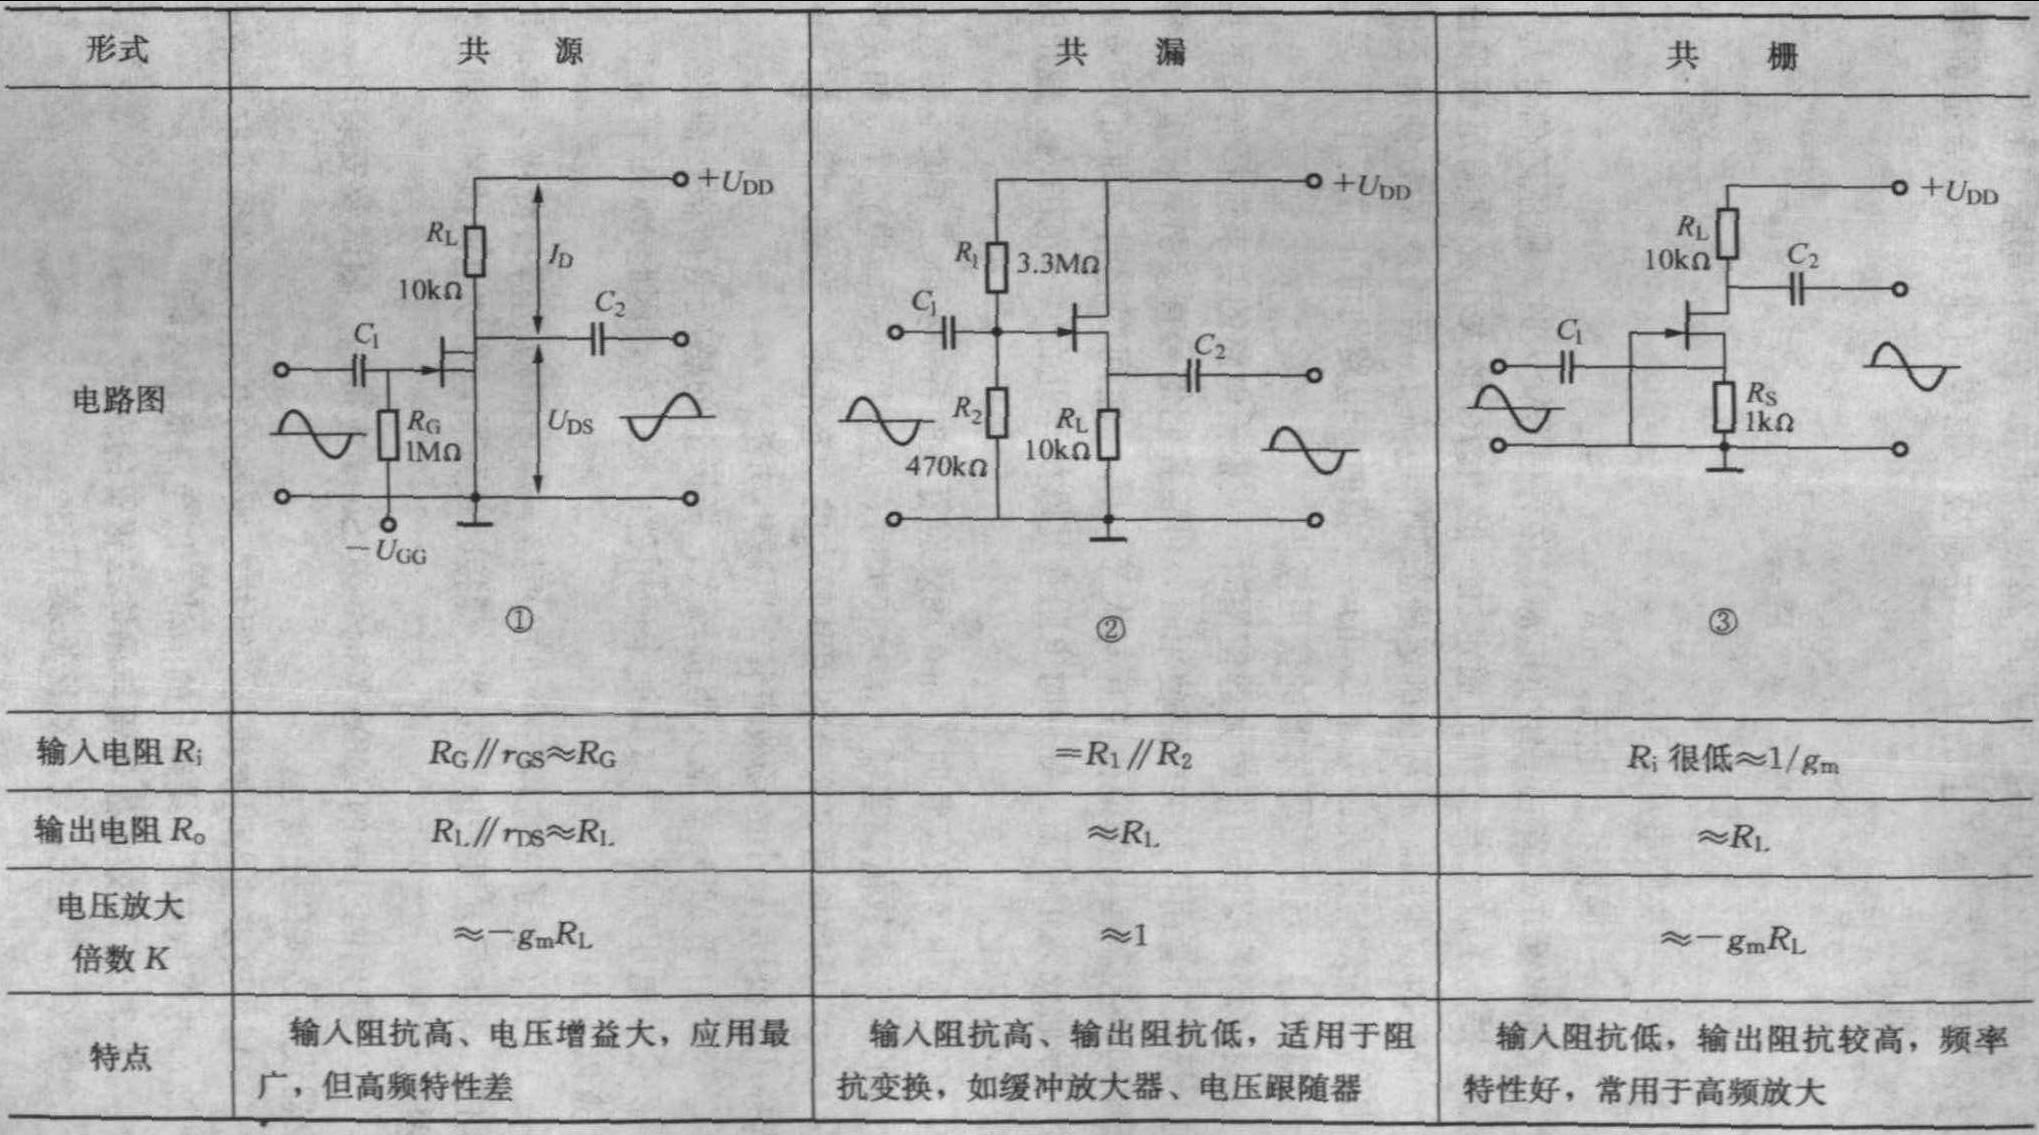 11.3.3 场效应晶体管的三种基本接法及偏置电路